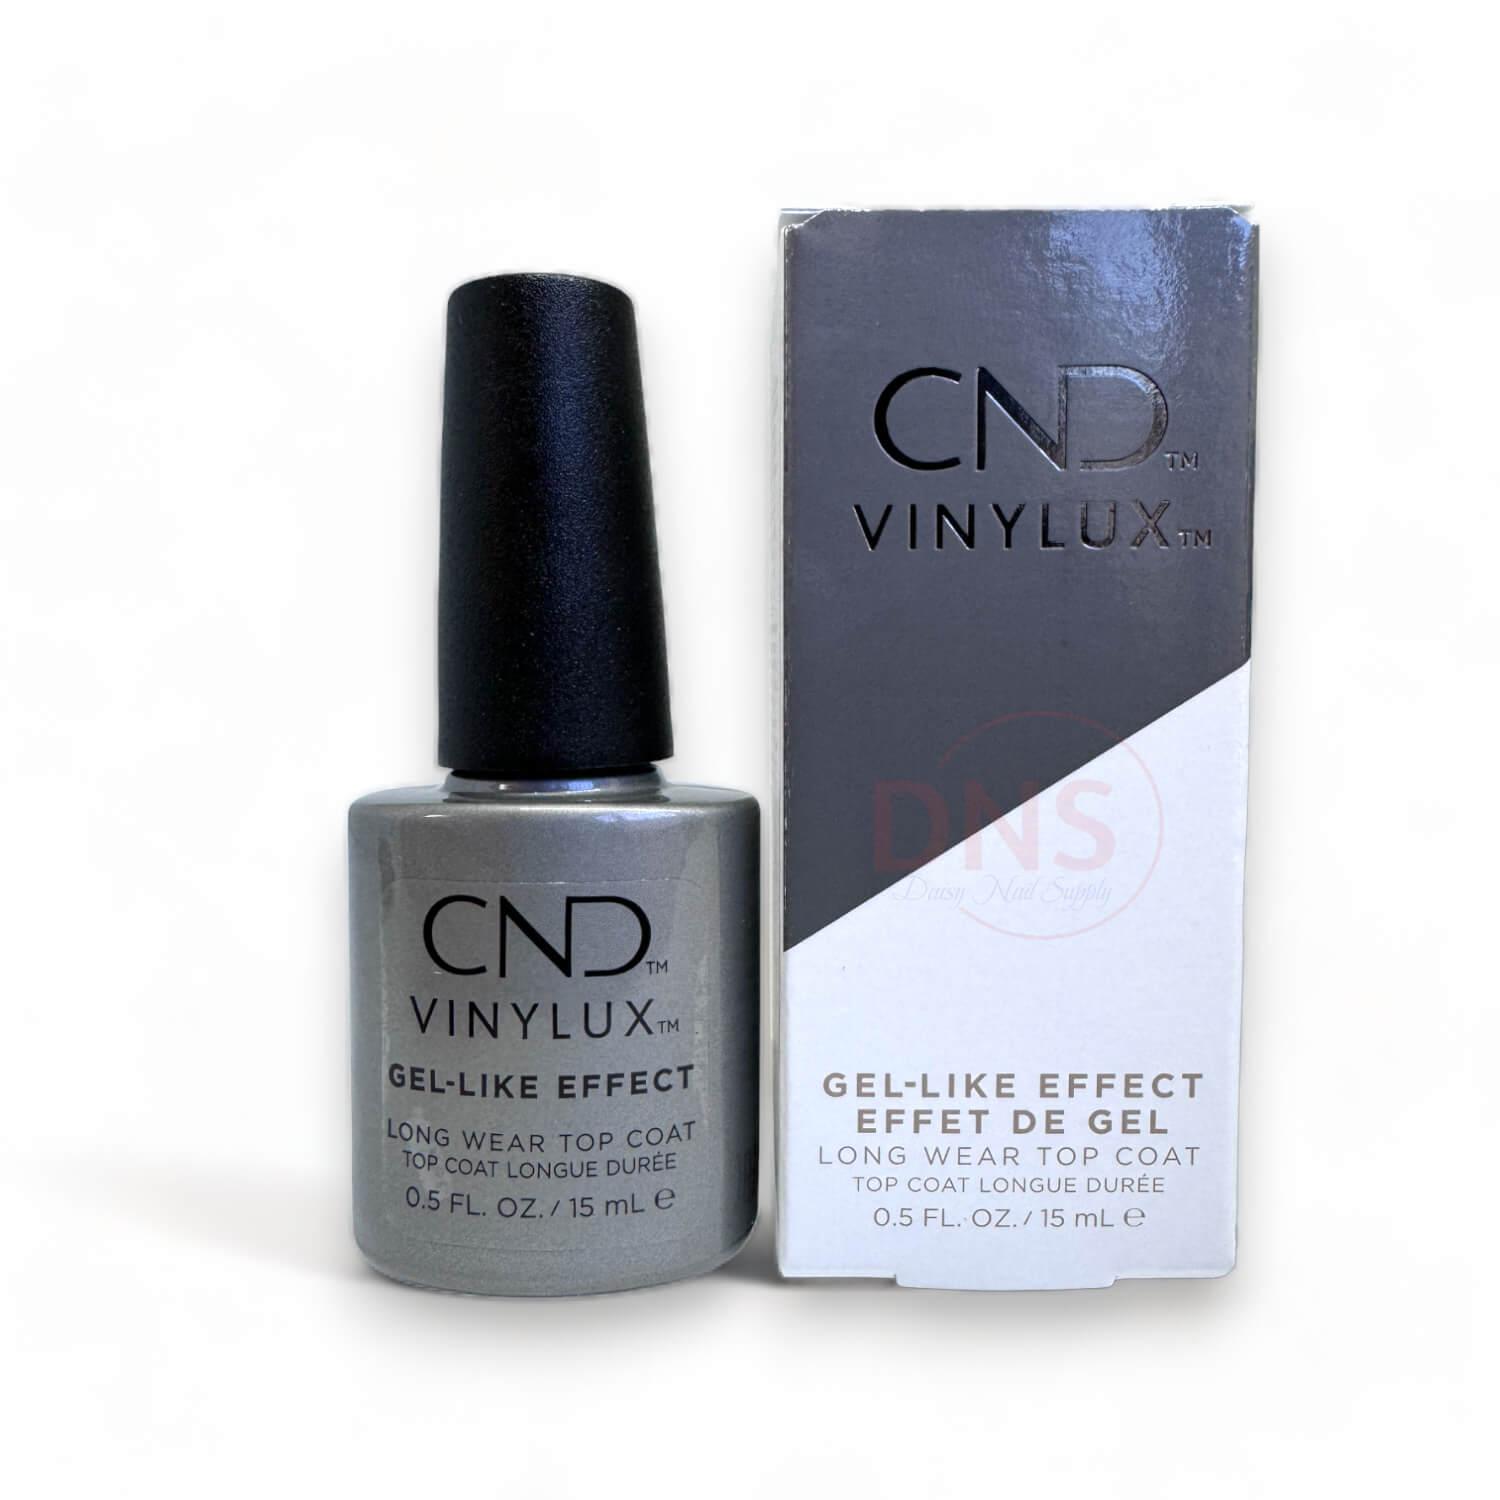 CND Vinylux Gel Like Effect Long Wear Top Coat 0.5 Fl oz